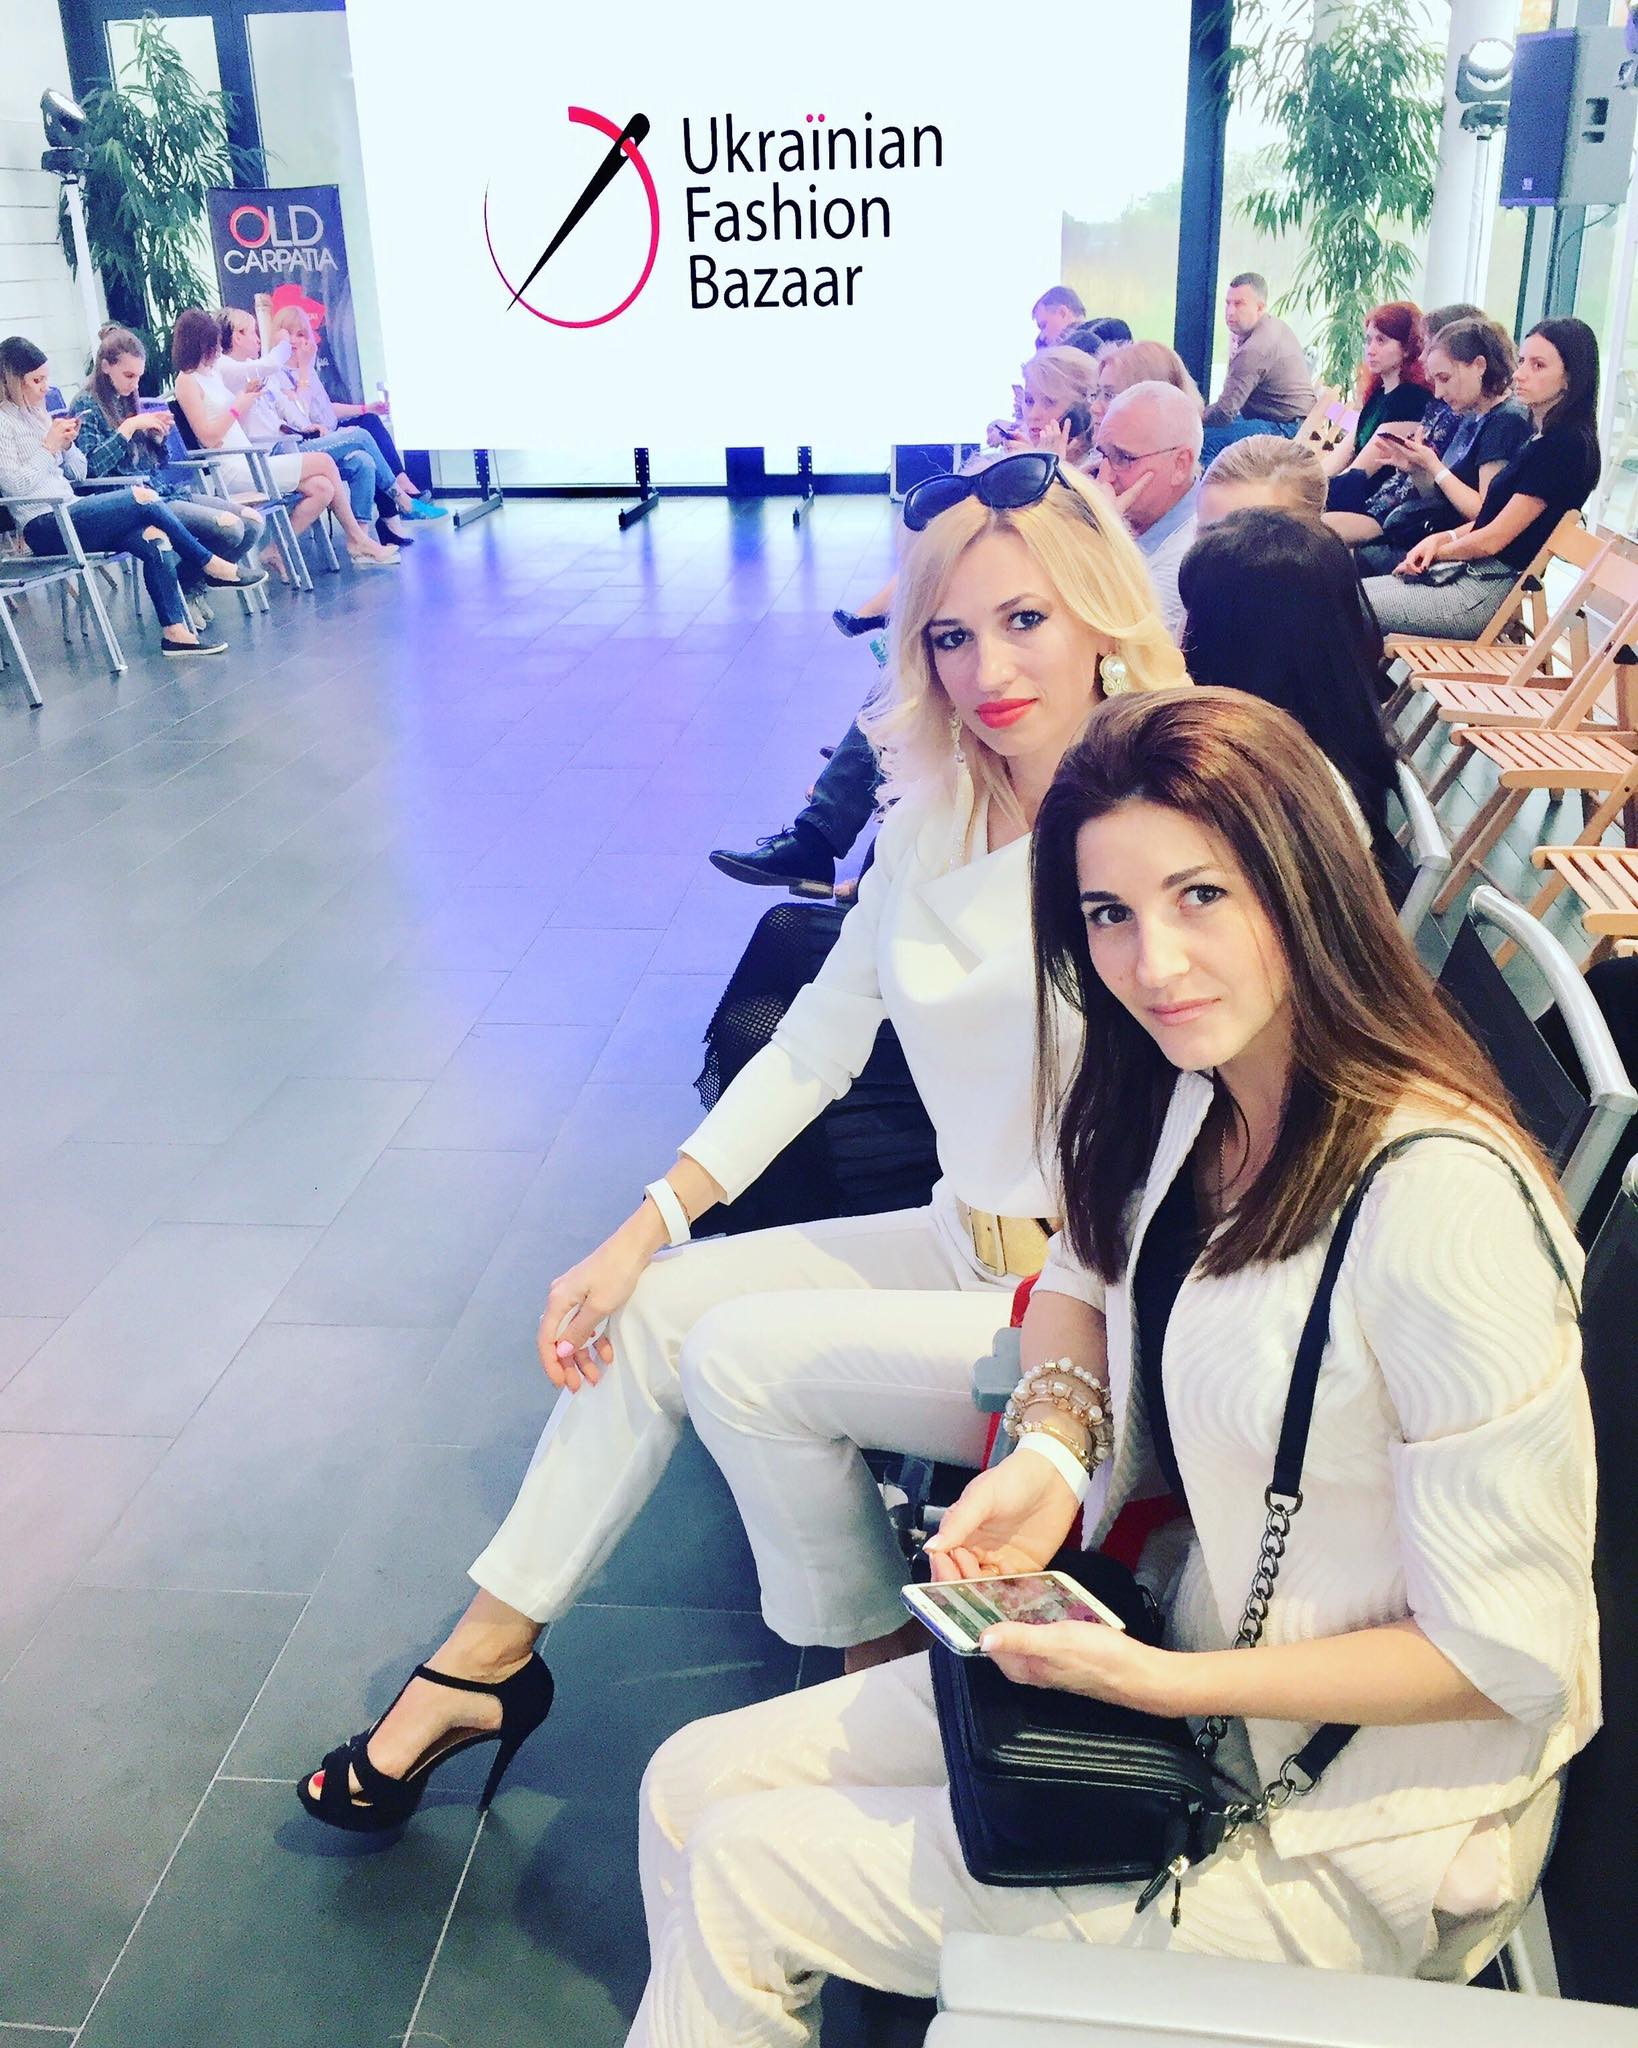 Ukrainian Fashion Bazar